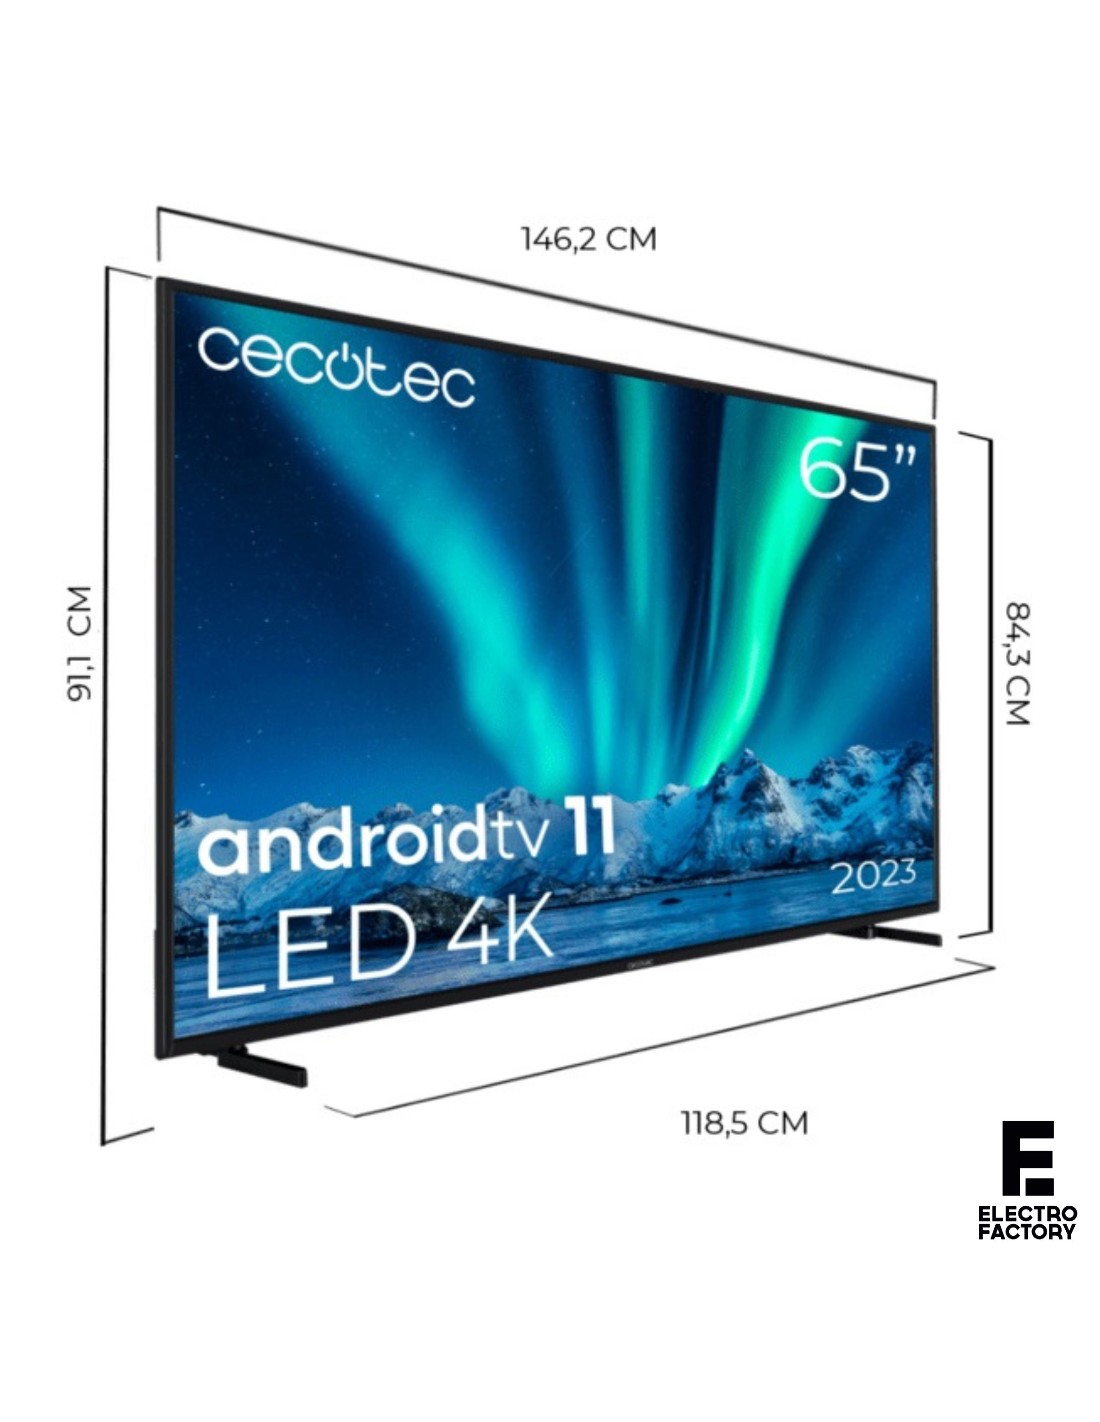 Cecotec presenta sus primeros televisores y son un chollo: un QLED de 65  pulgadas por 570 euros